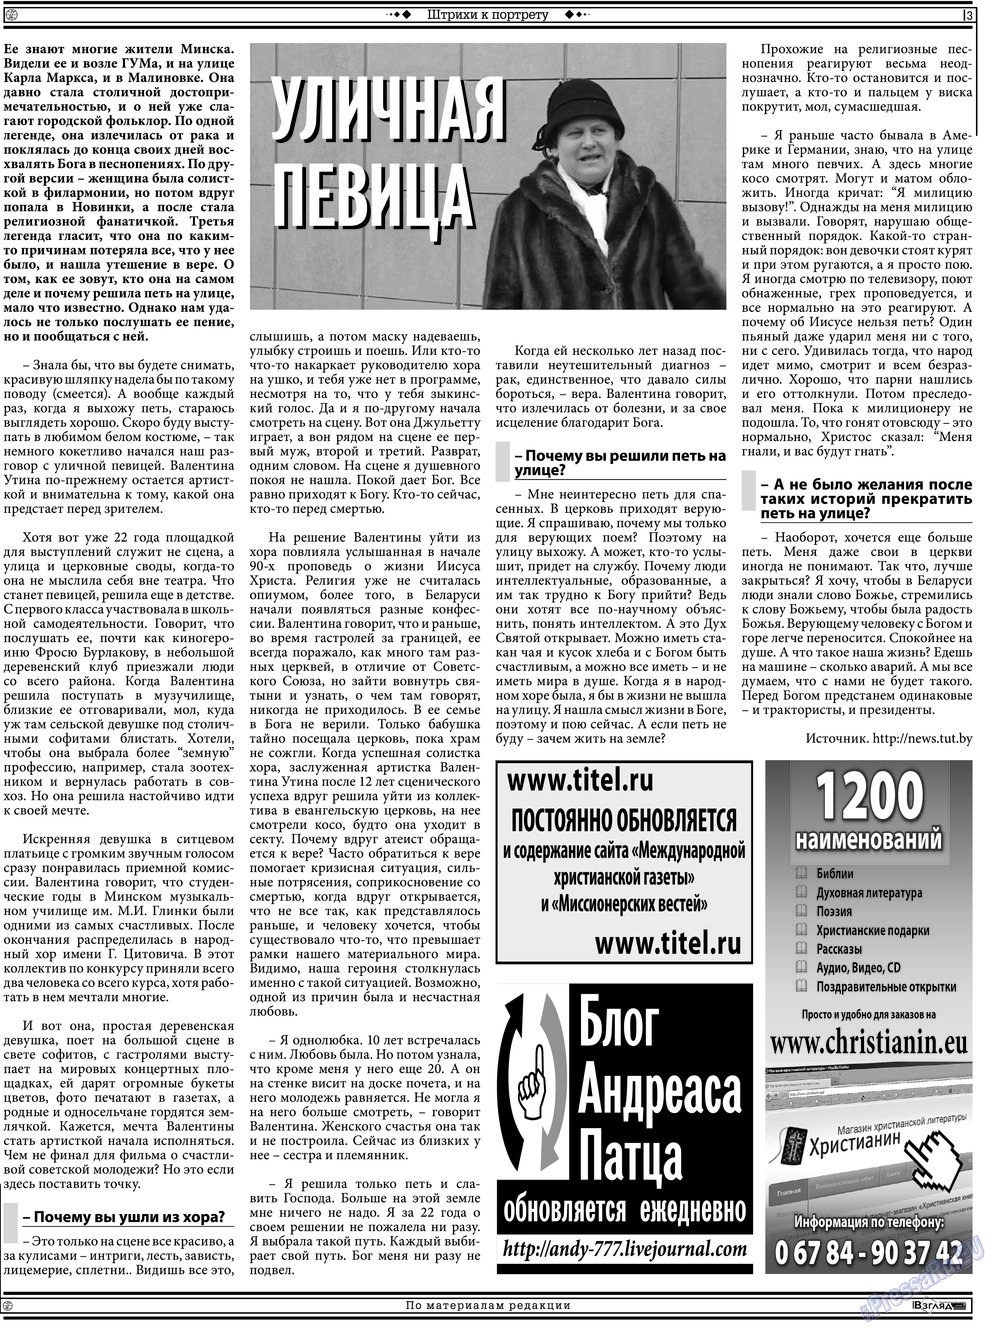 Христианская газета (газета). 2013 год, номер 5, стр. 17